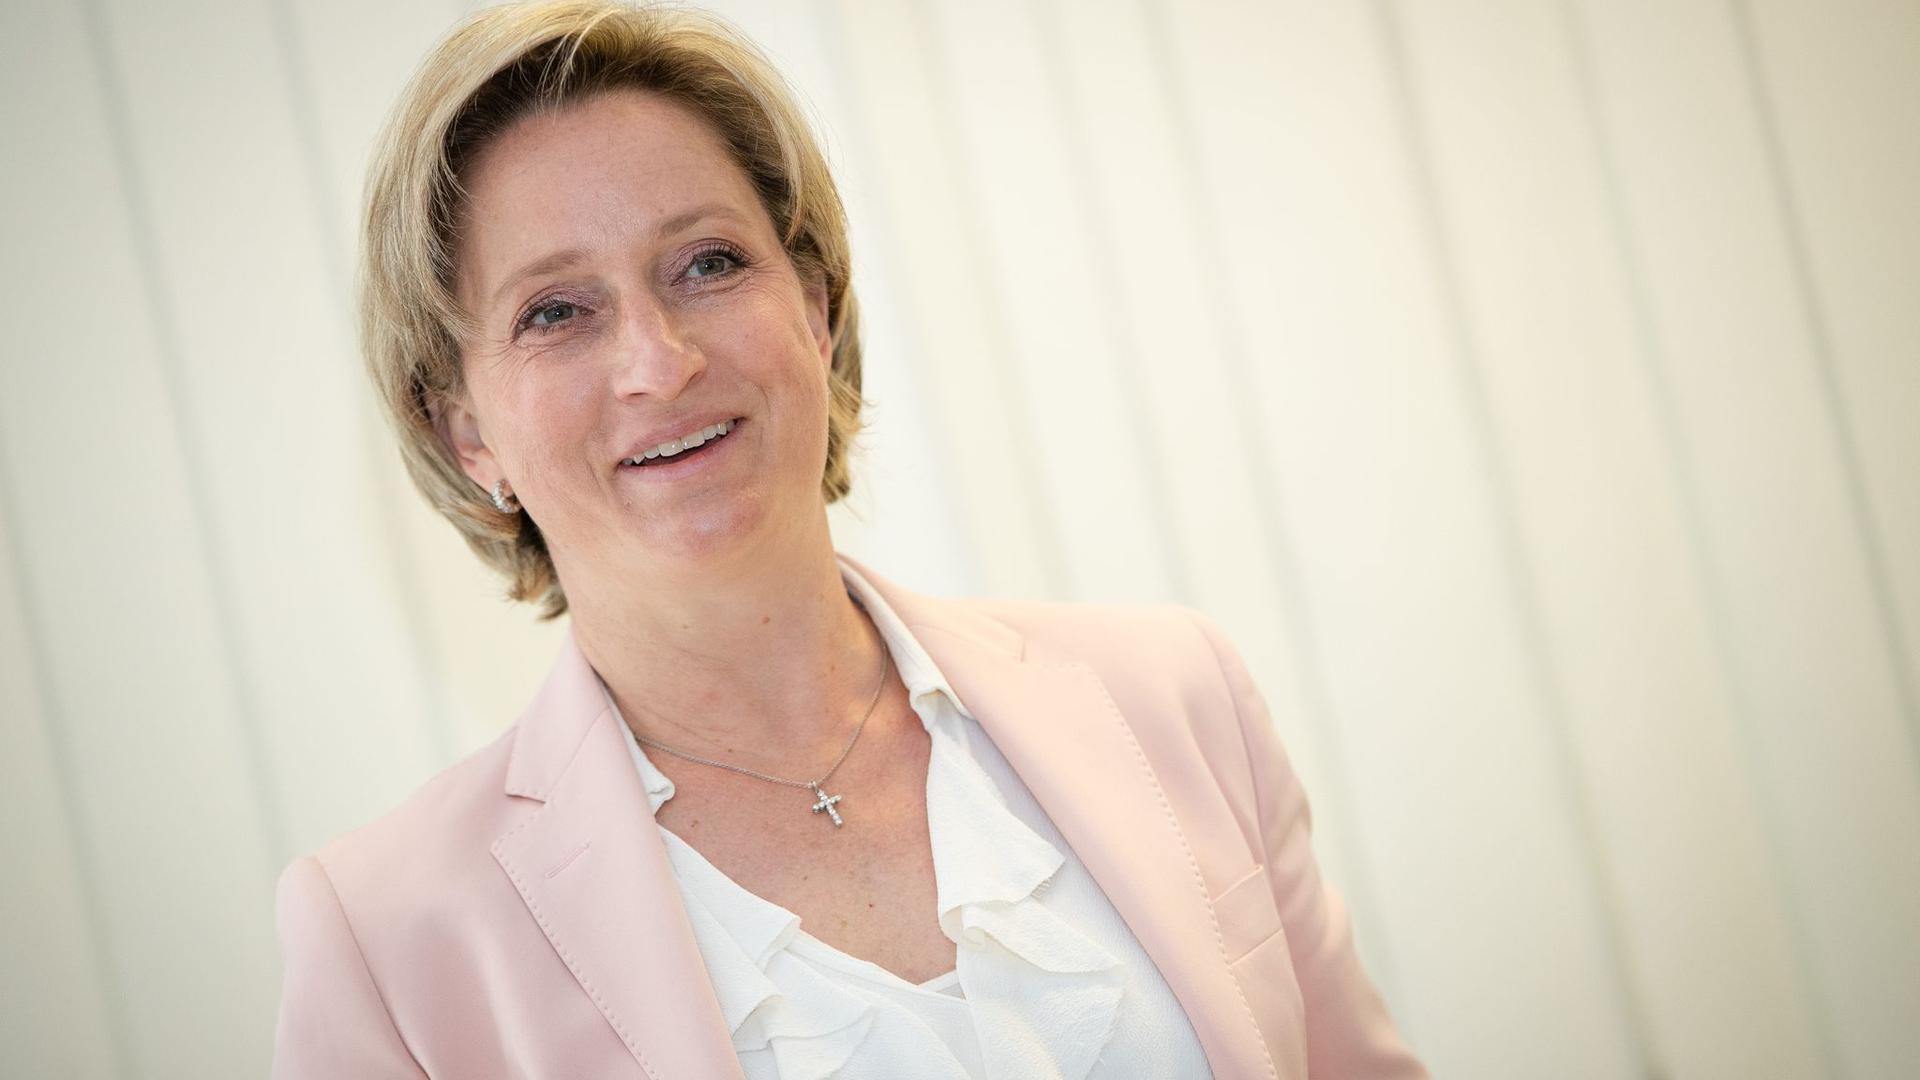 Nicole Hoffmeister-Kraut (CDU), Wirtschaftsministerin von Baden-Württemberg, lächelt.